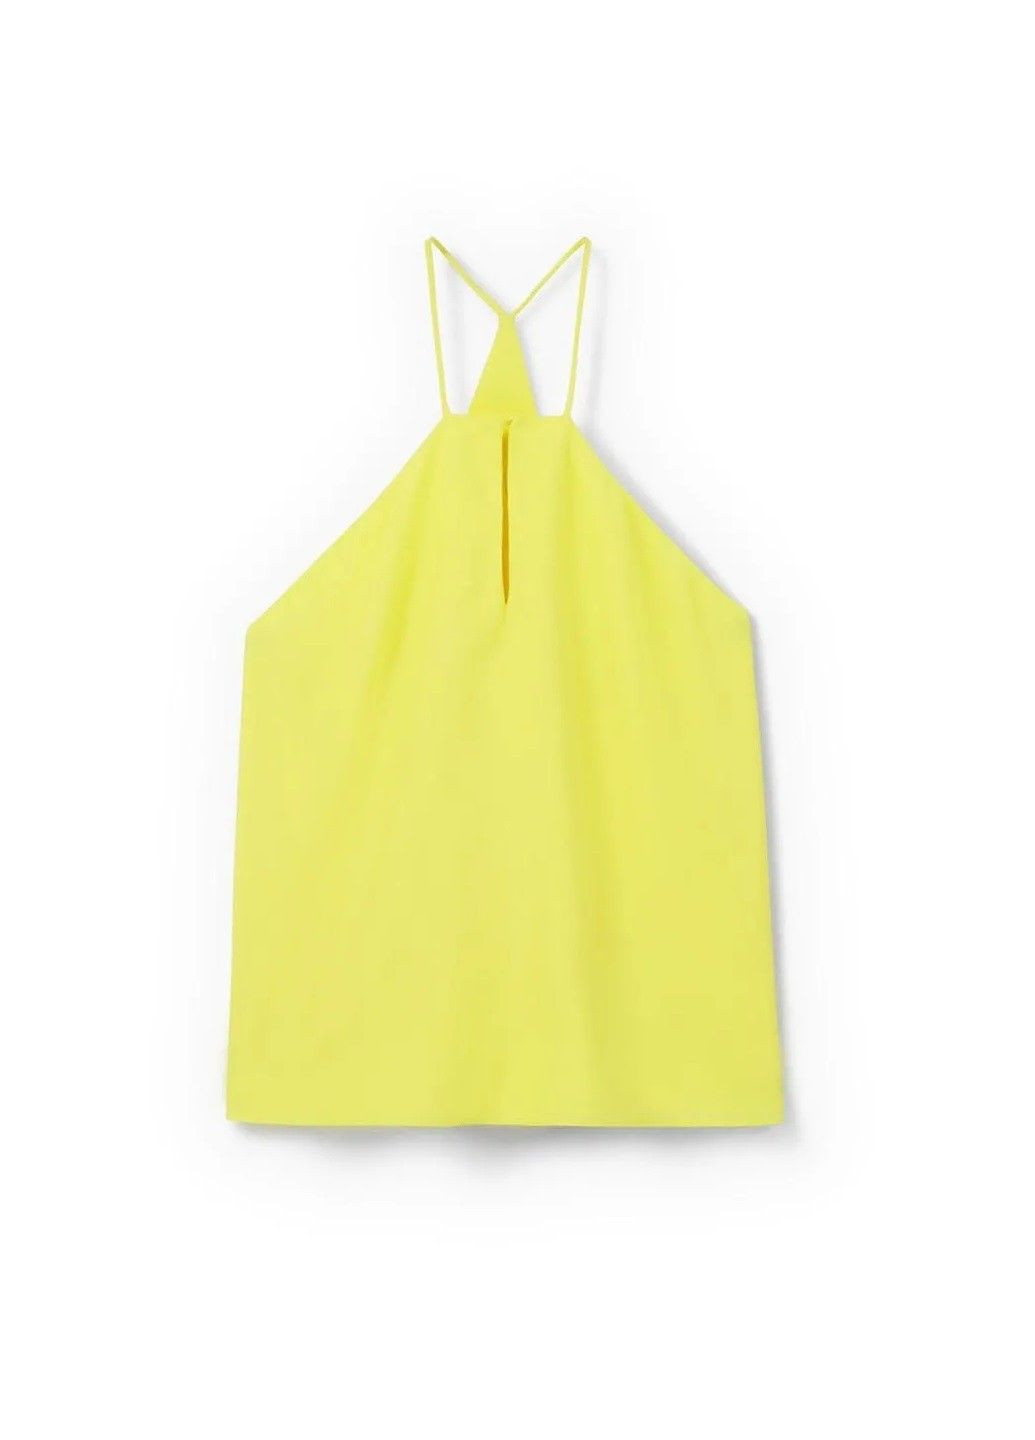 Жовта демісезонна блуза Mango